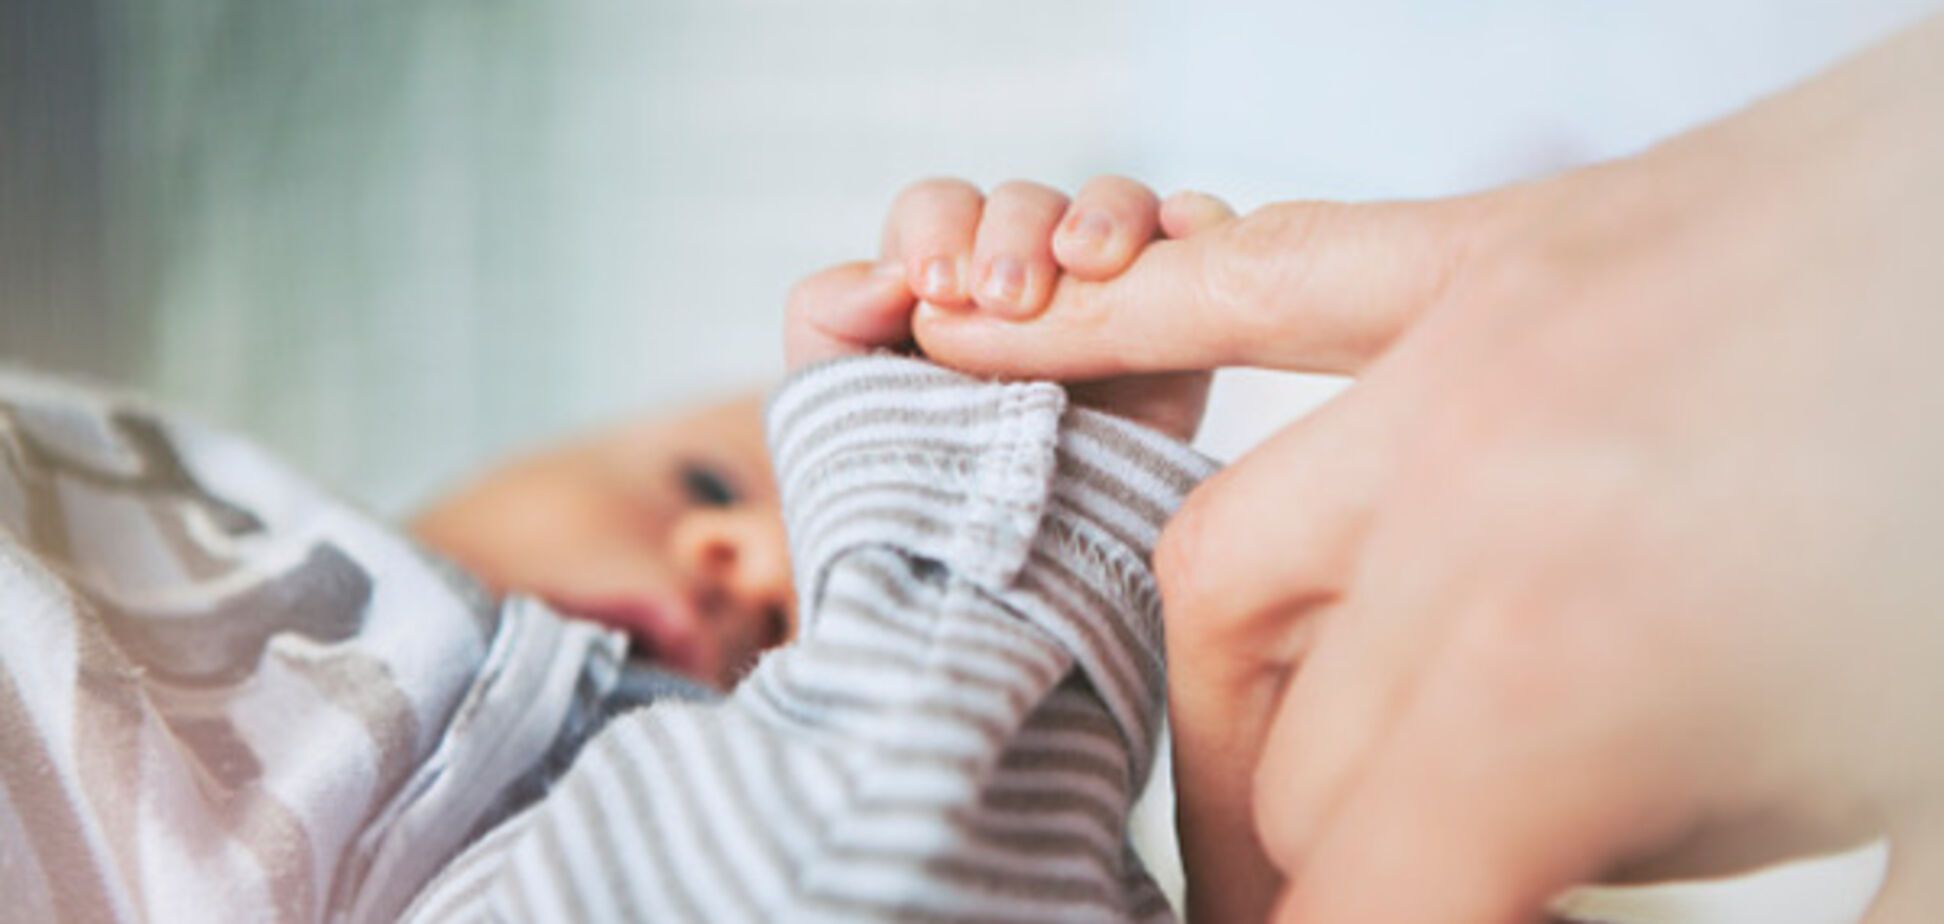 Новый тест для беременных спасет жизни тысяч детей